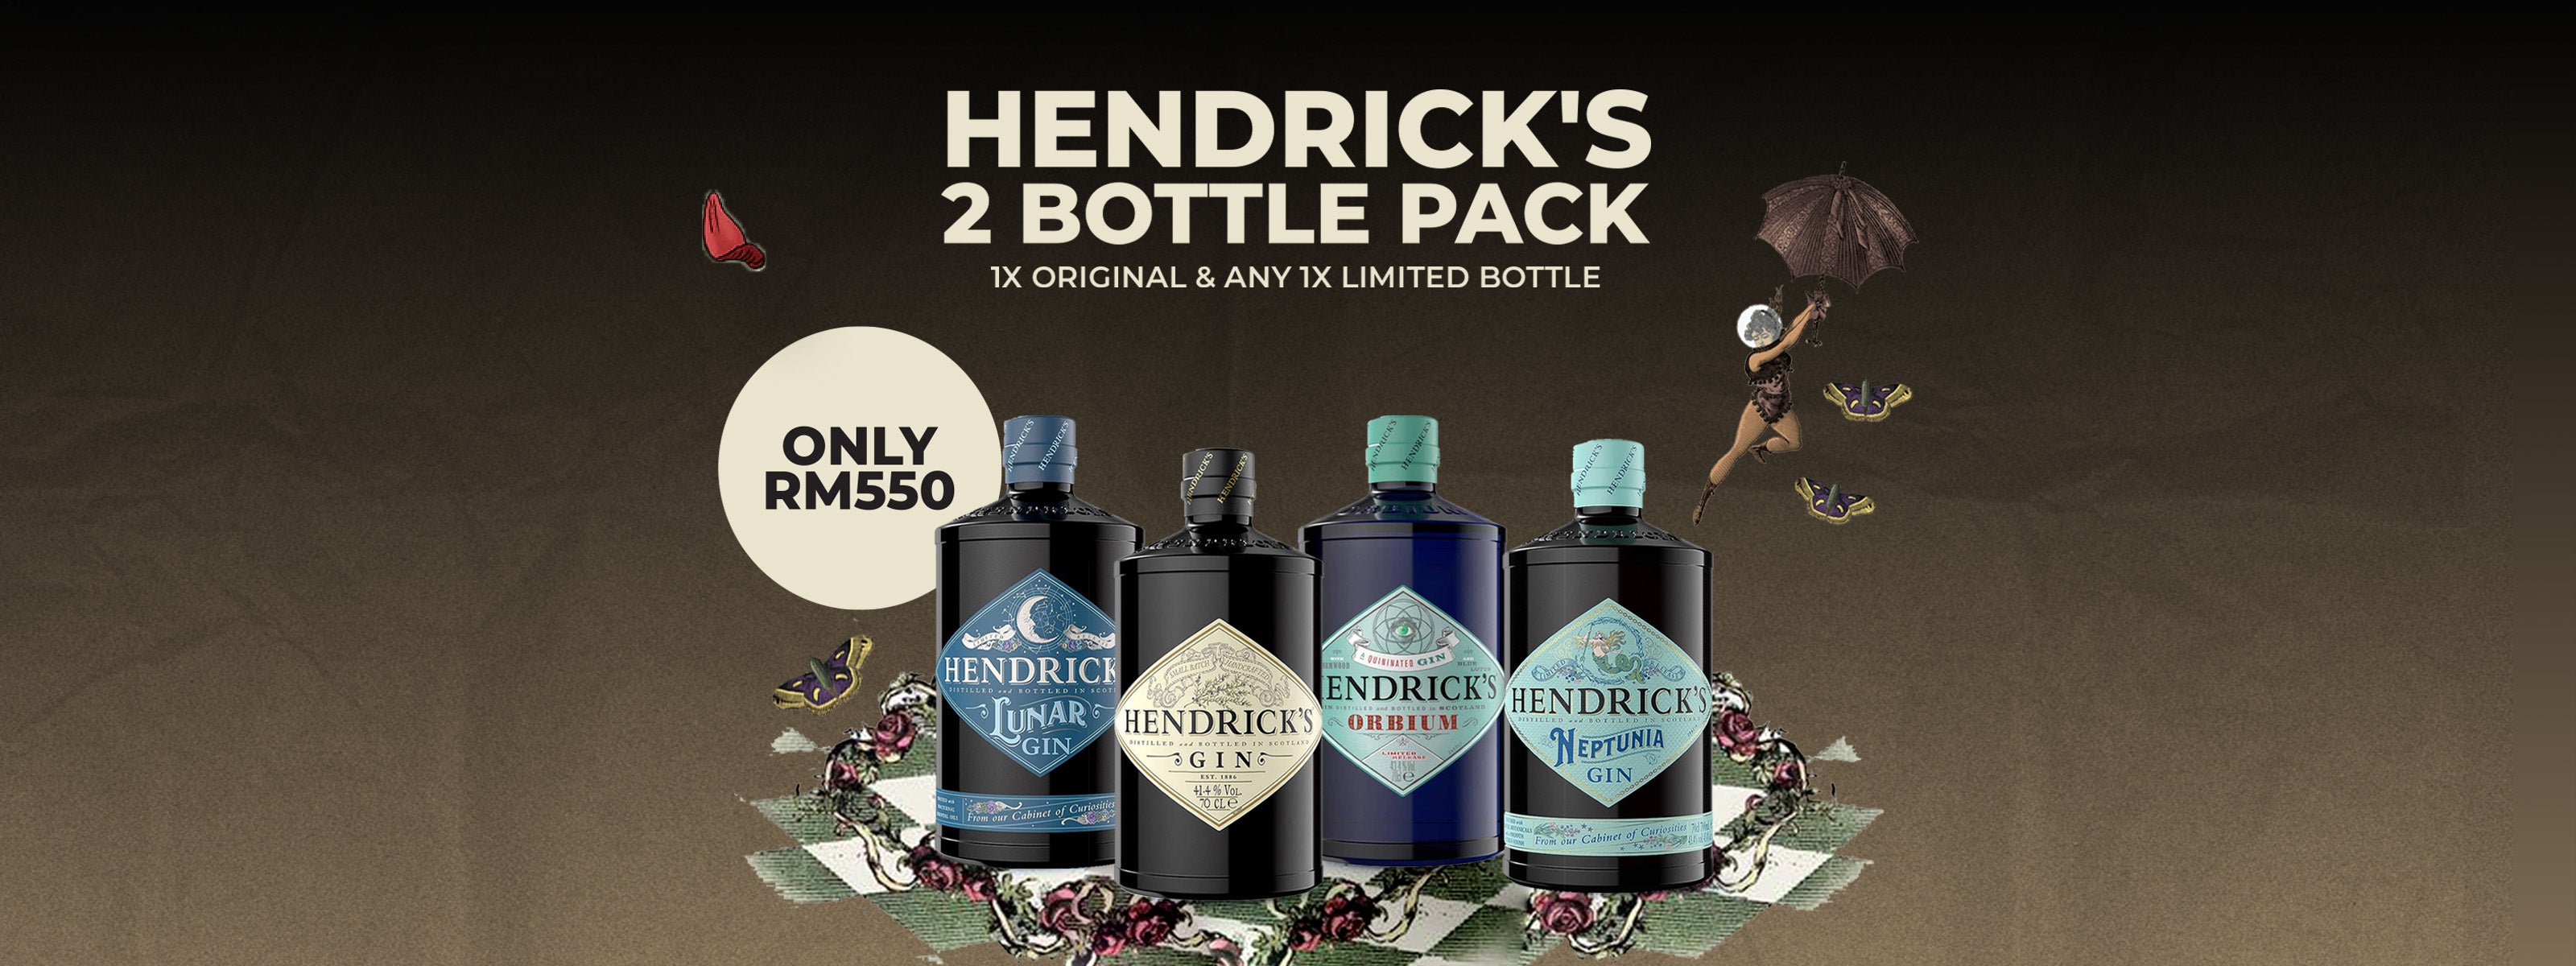 Great deal for Hendricks Gin 2 Bottle Bundle Packs for RM550